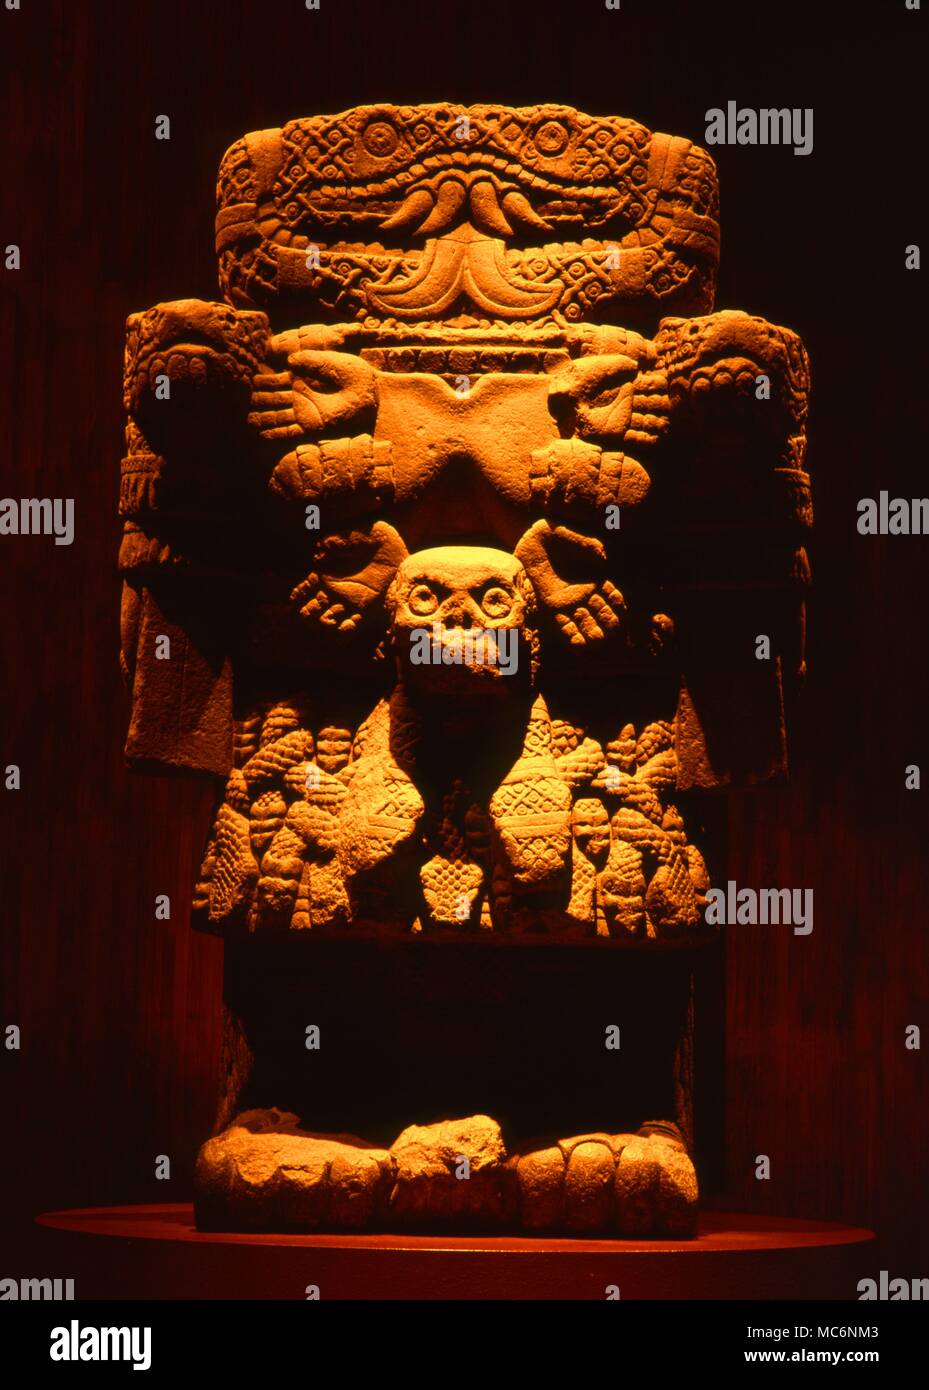 Mexiko - Die ERDGÖTTIN, COATICUE dieser Aztec Statue der Serpentine Erdgöttin, Caoticue, bombines Schädel und duad s erpents. Das Foto wurde mit der Genehmigung des nationalen Anthropologischen Museum gemacht, in Mexiko Stadt. Es wird behauptet, dass die Statue früher auf ein omphalos Tafel stand, die das Zentrum der Erde. Stockfoto